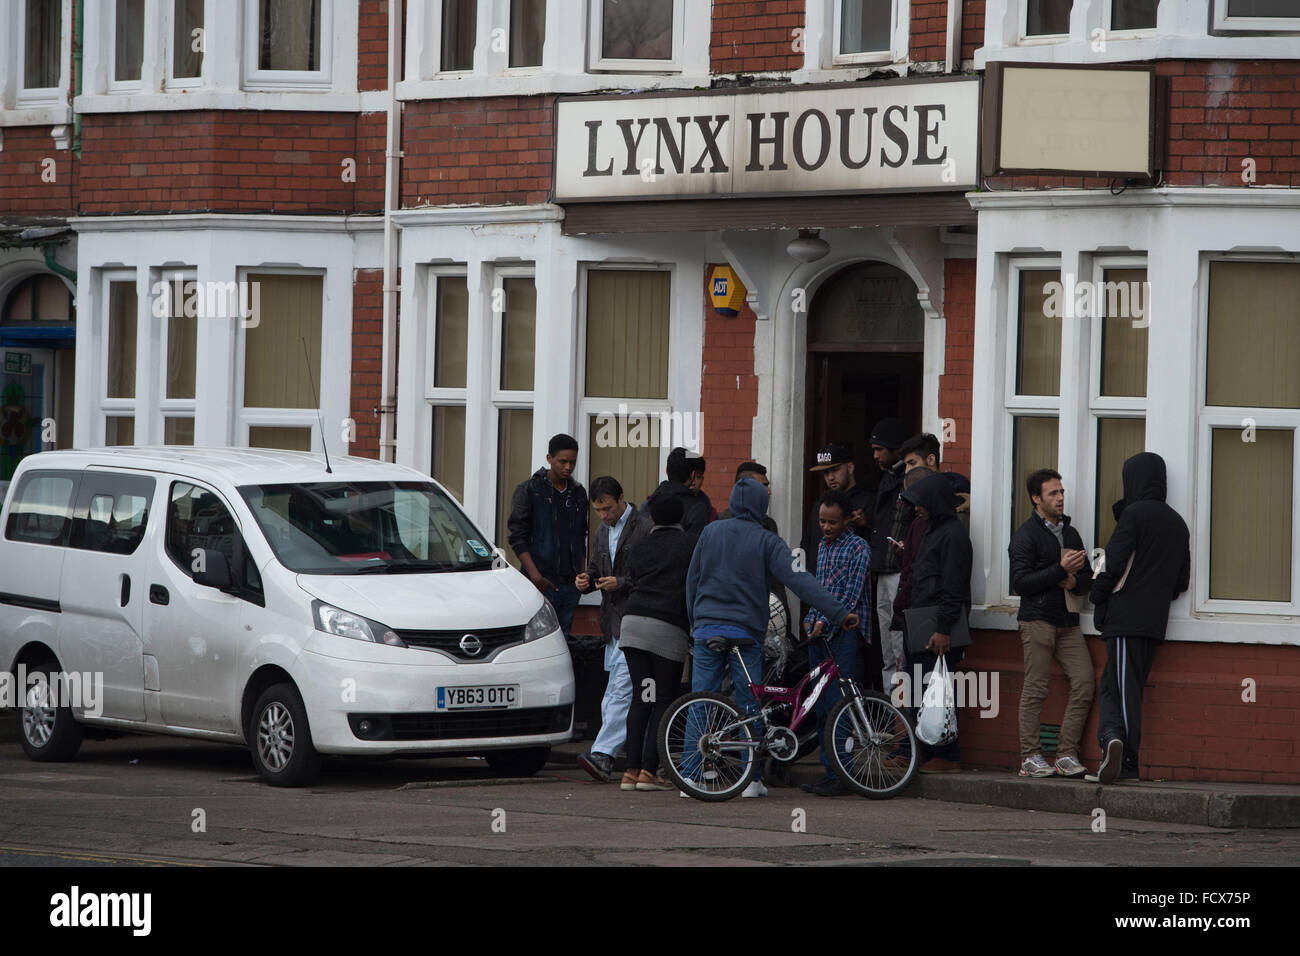 Maison de lynx à Cardiff, Pays de Galles, qui abrite des demandeurs d'asile. Banque D'Images